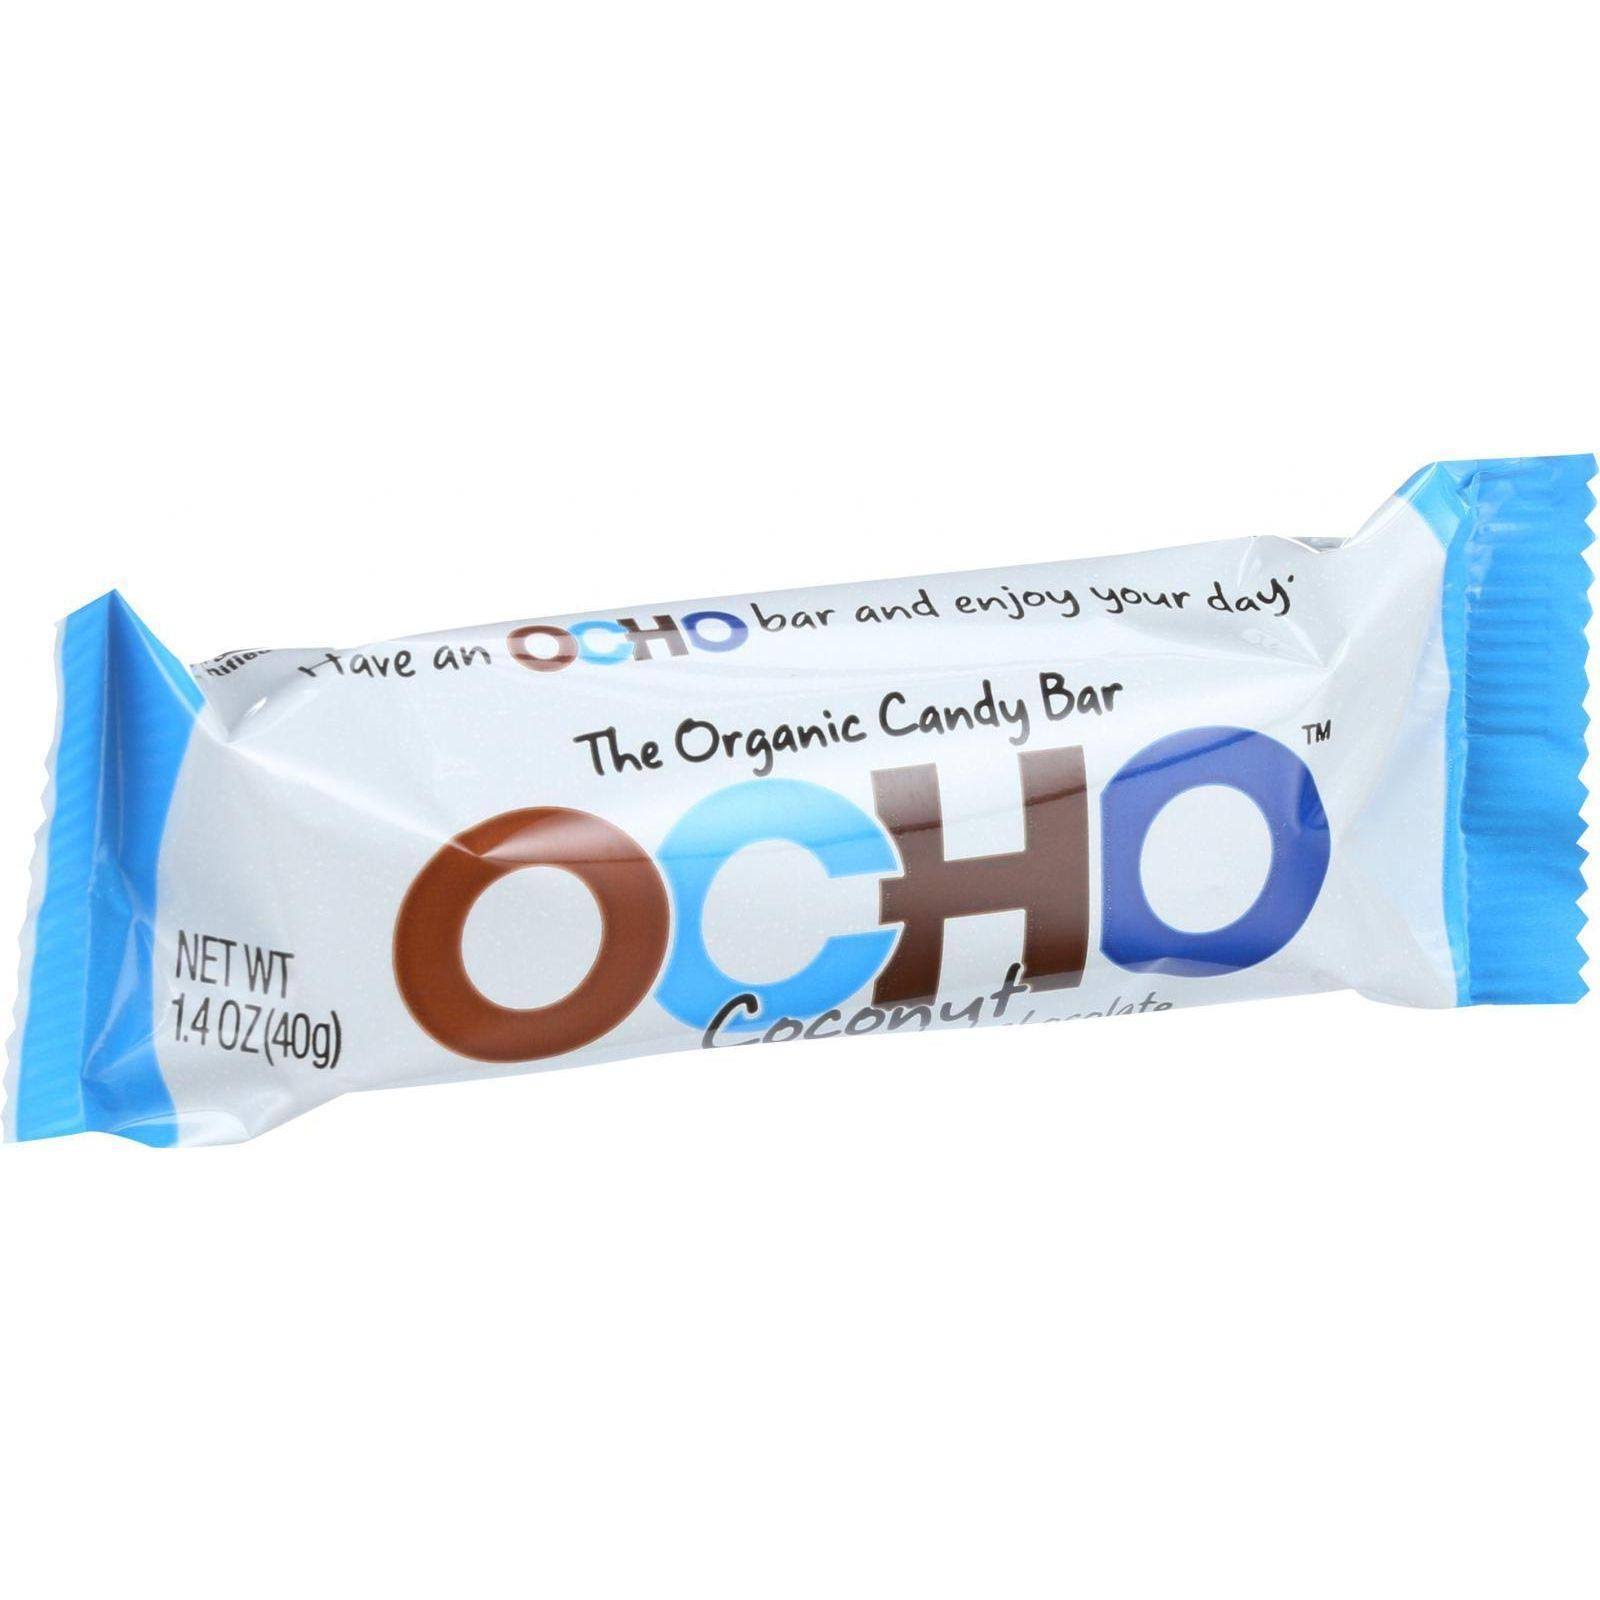 Ocho Organic Candy Bar - Coconut, 1.4oz